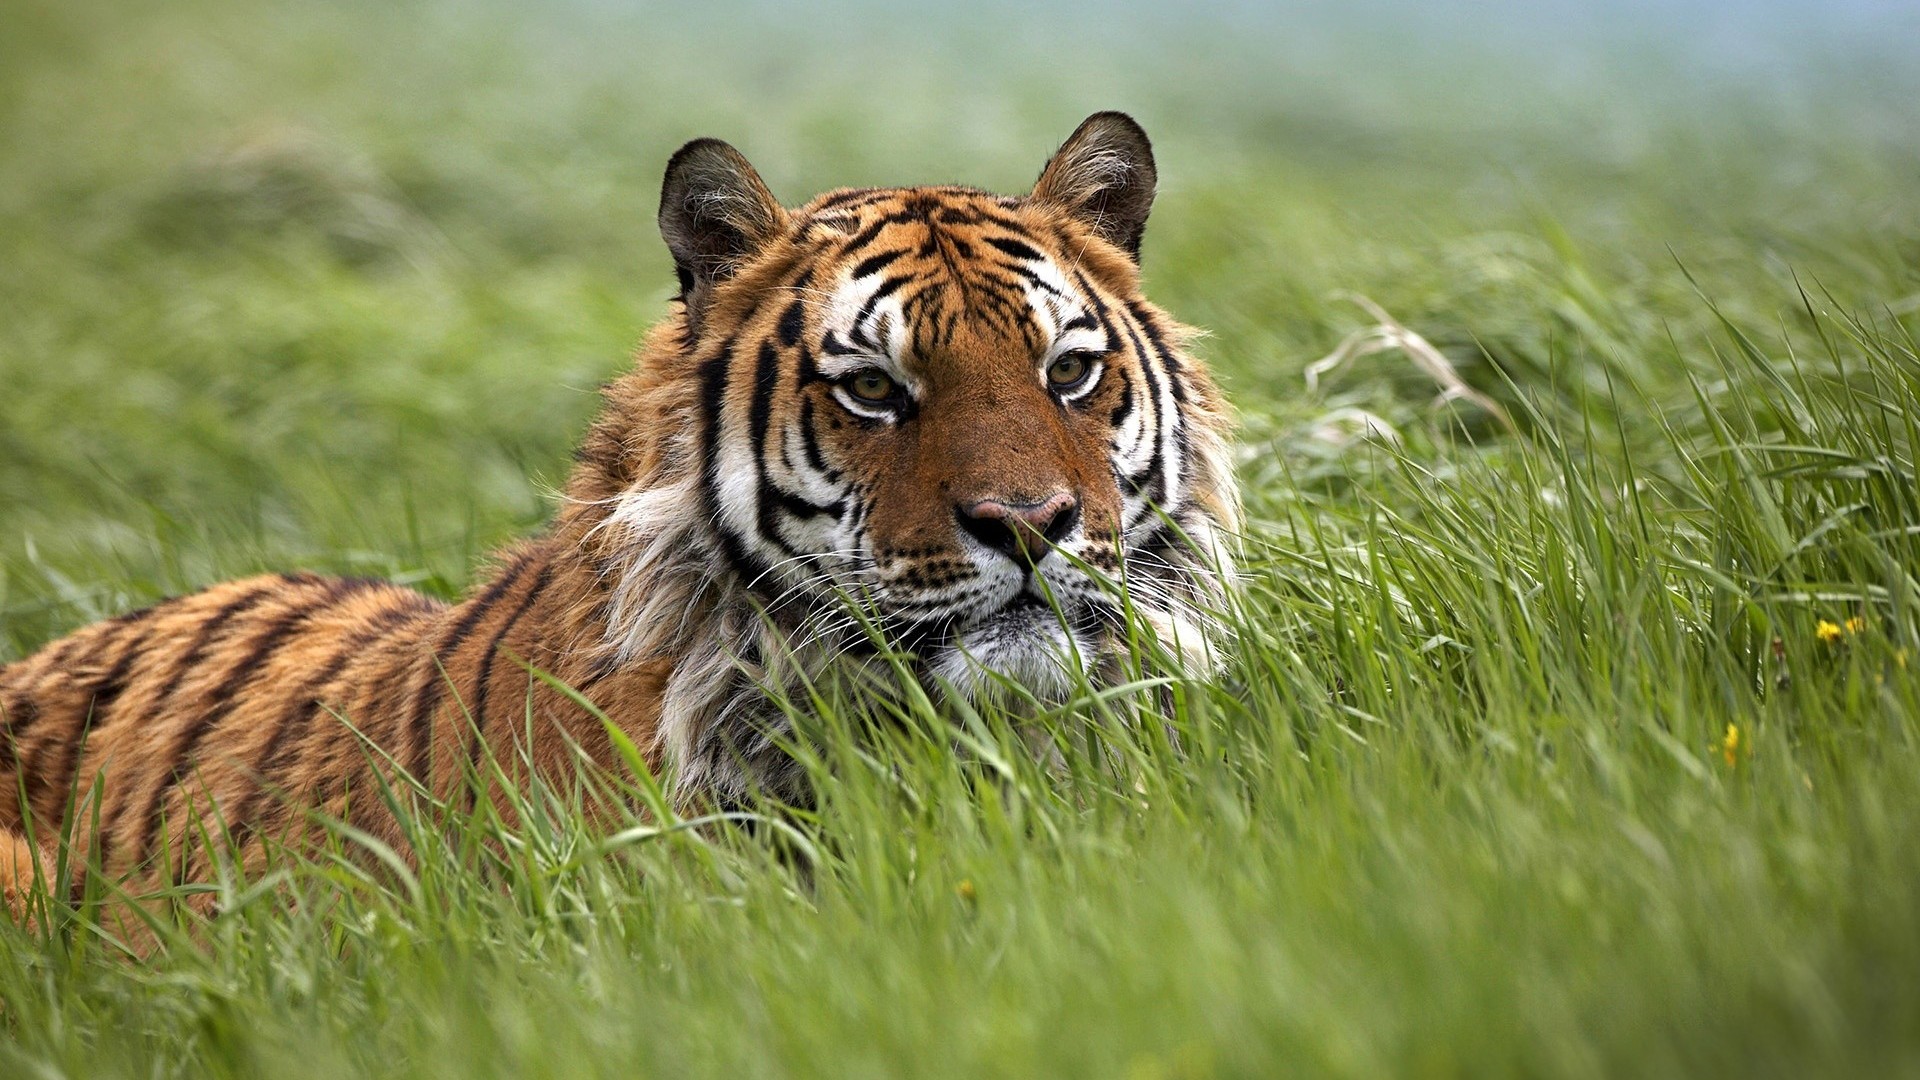 Скачать обои бесплатно Животные, Трава, Тигр картинка на рабочий стол ПК